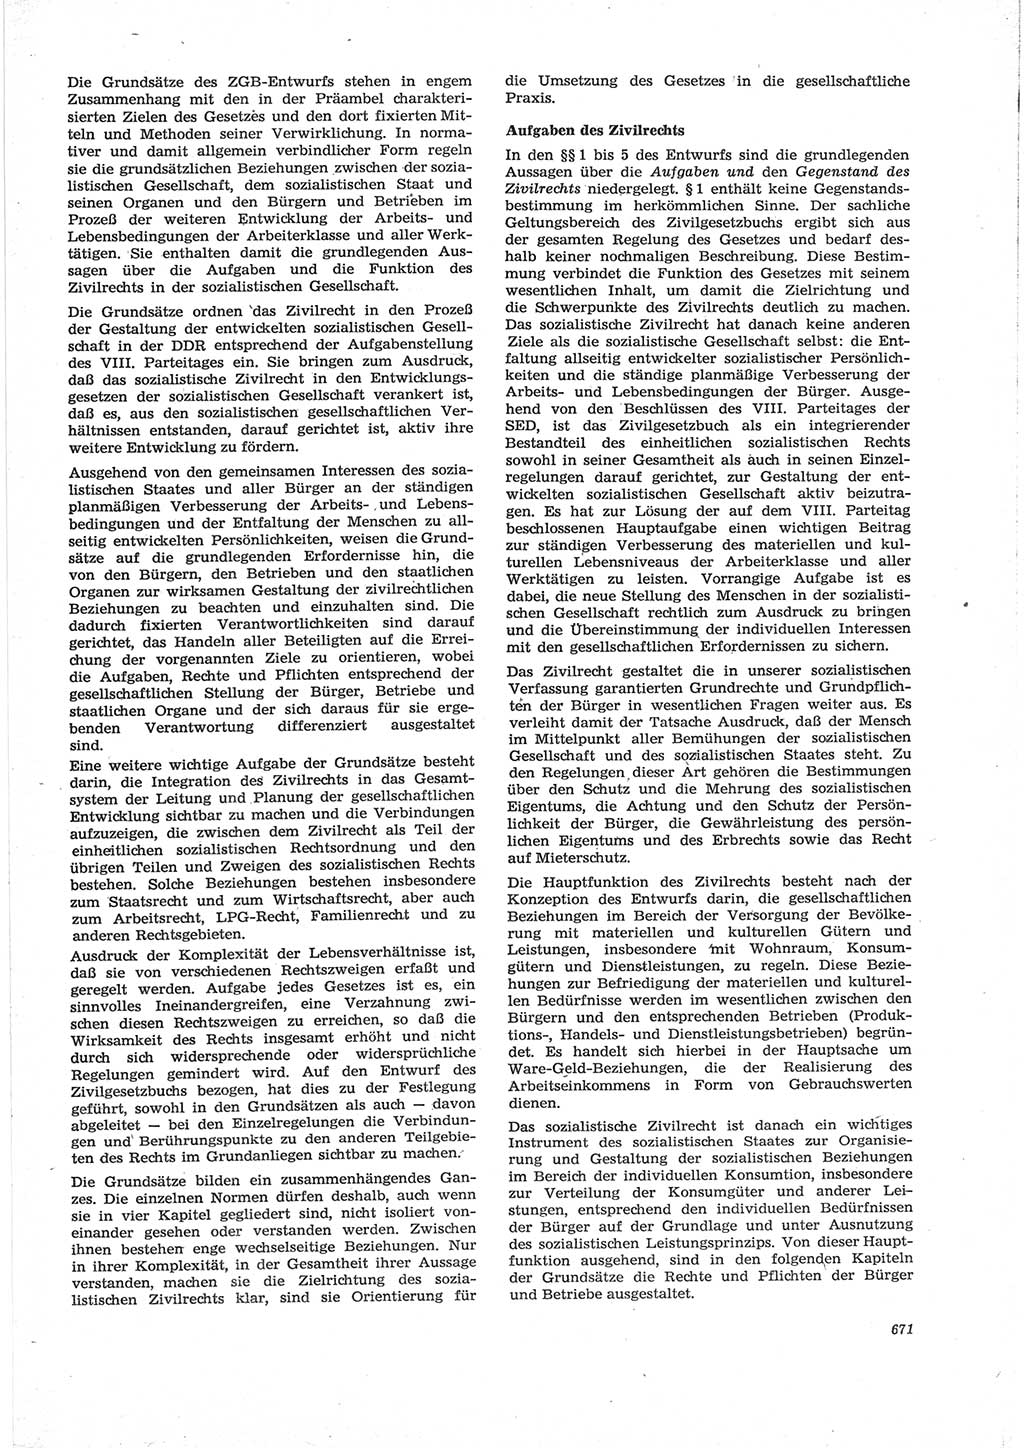 Neue Justiz (NJ), Zeitschrift für Recht und Rechtswissenschaft [Deutsche Demokratische Republik (DDR)], 28. Jahrgang 1974, Seite 671 (NJ DDR 1974, S. 671)